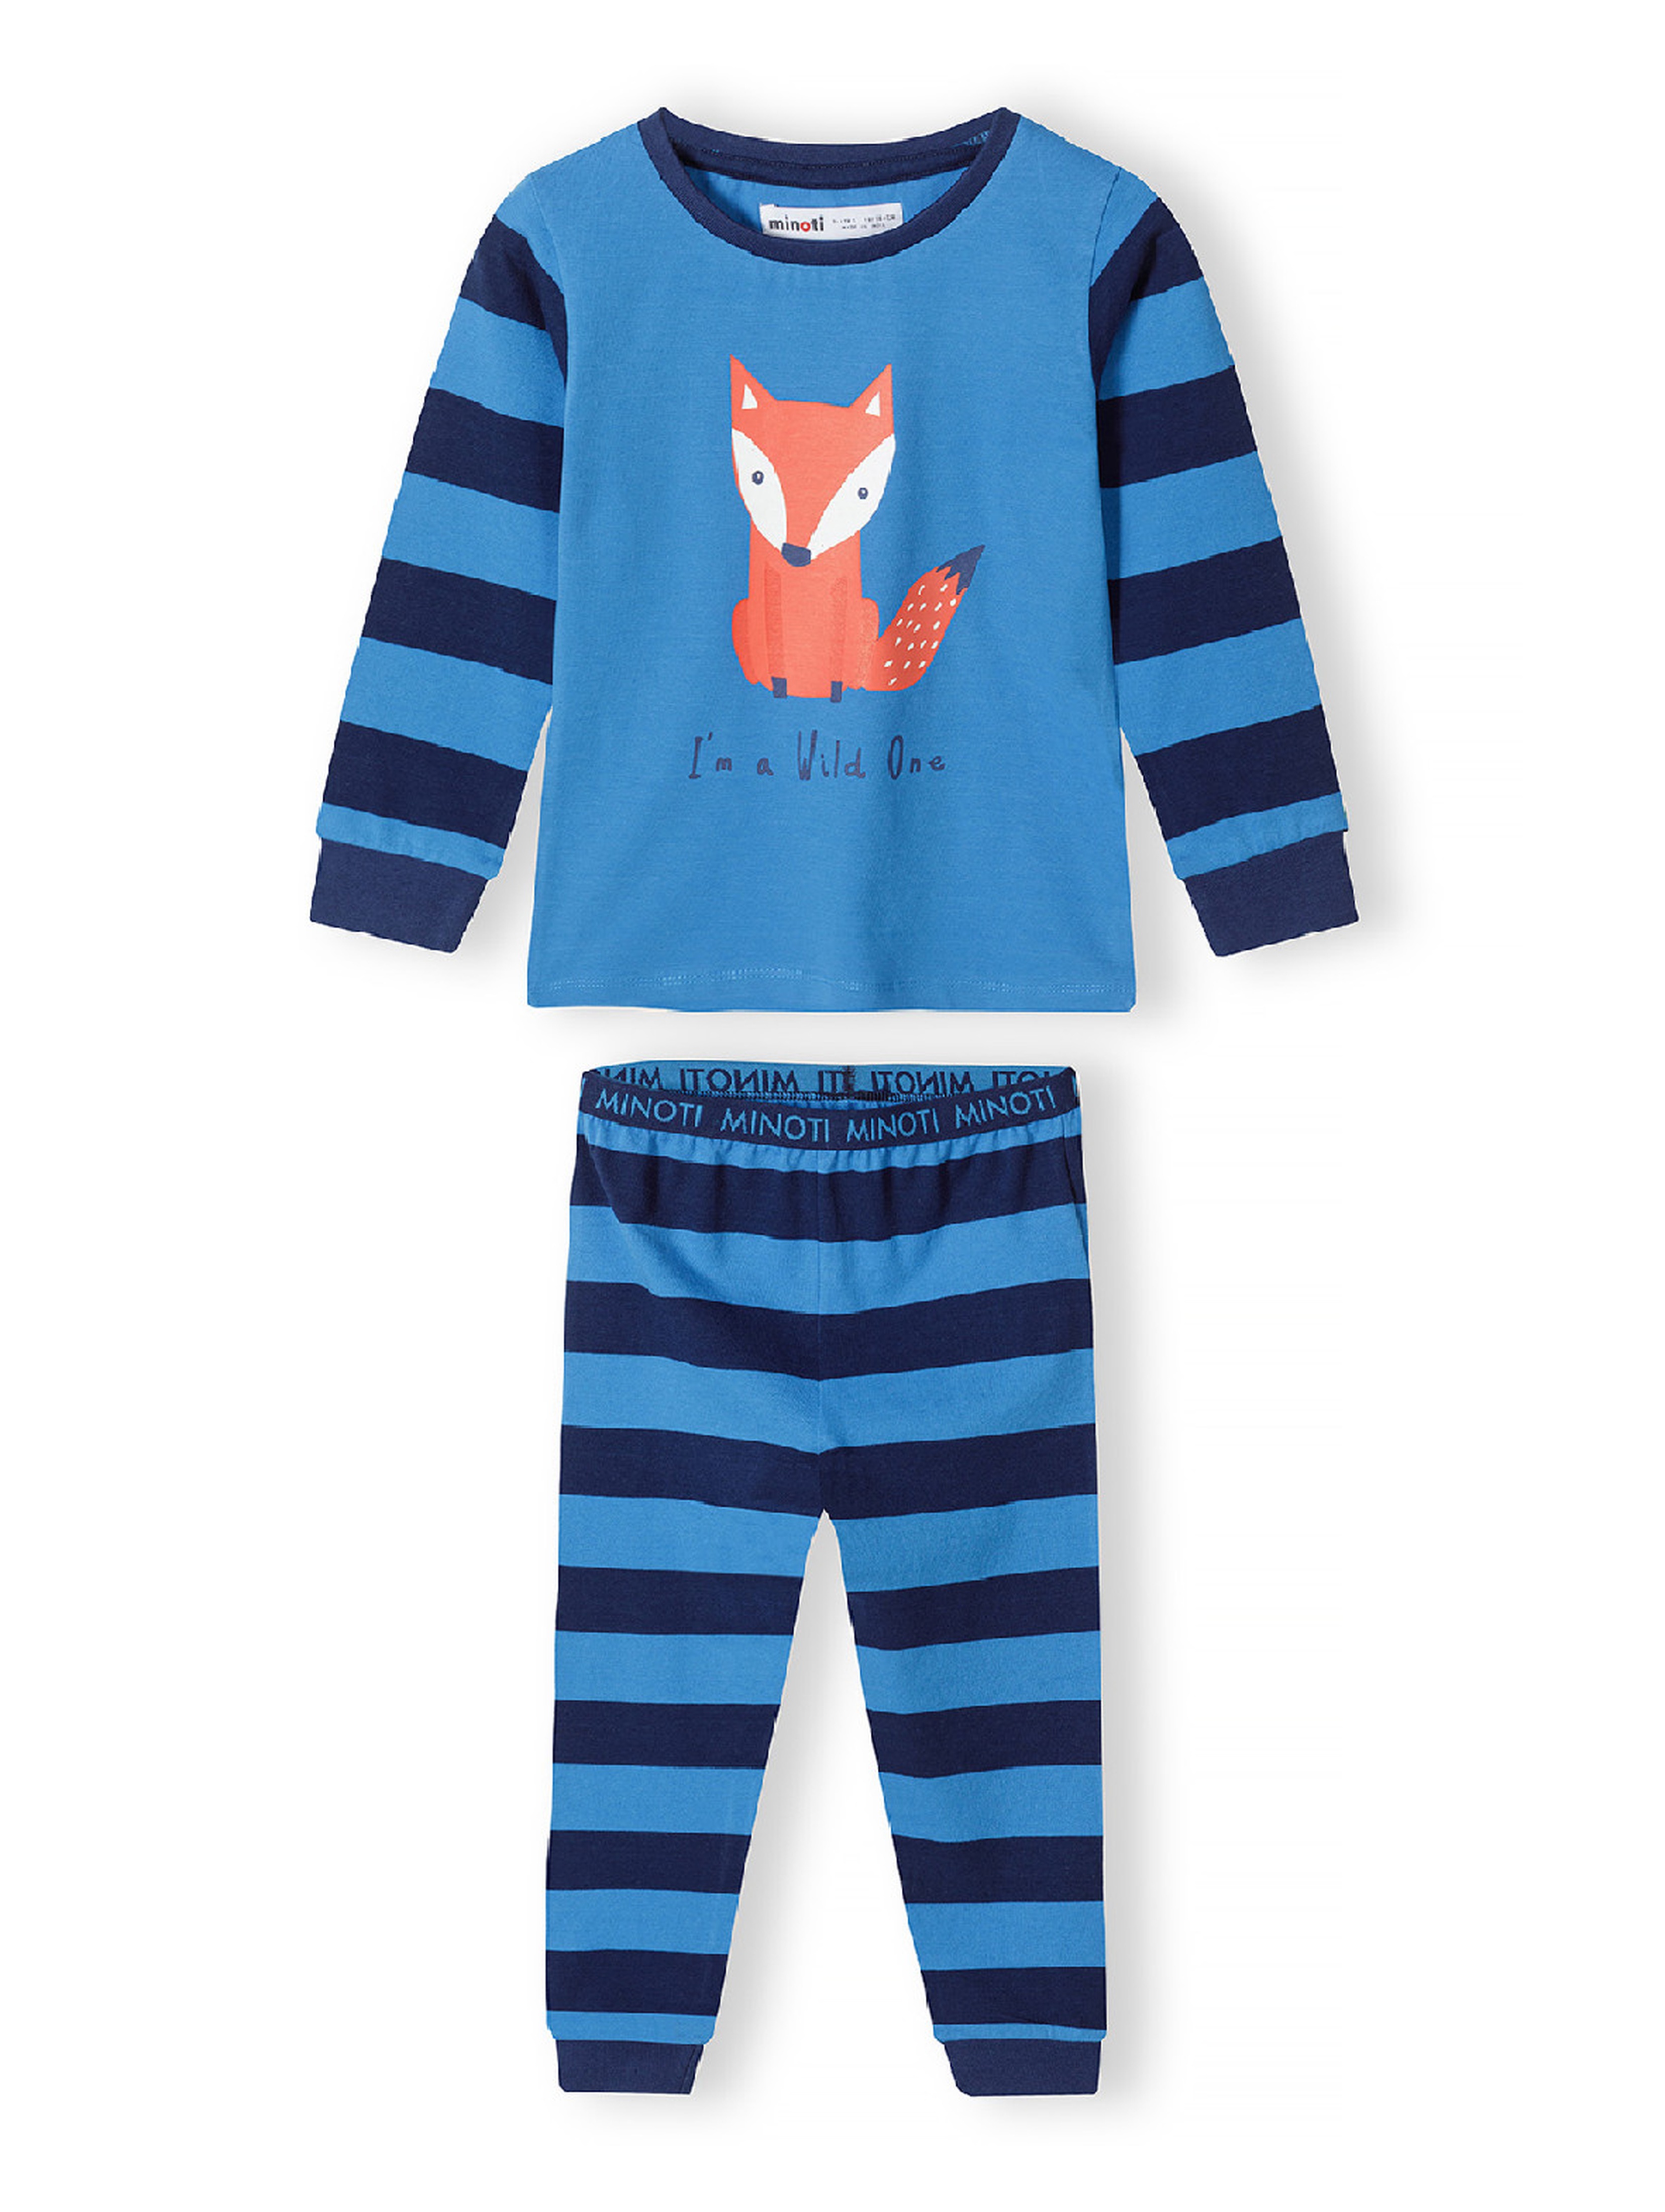 2-pack piżam niemowlęcych z długim rękawem w leśne zwierzęta dla chłopca